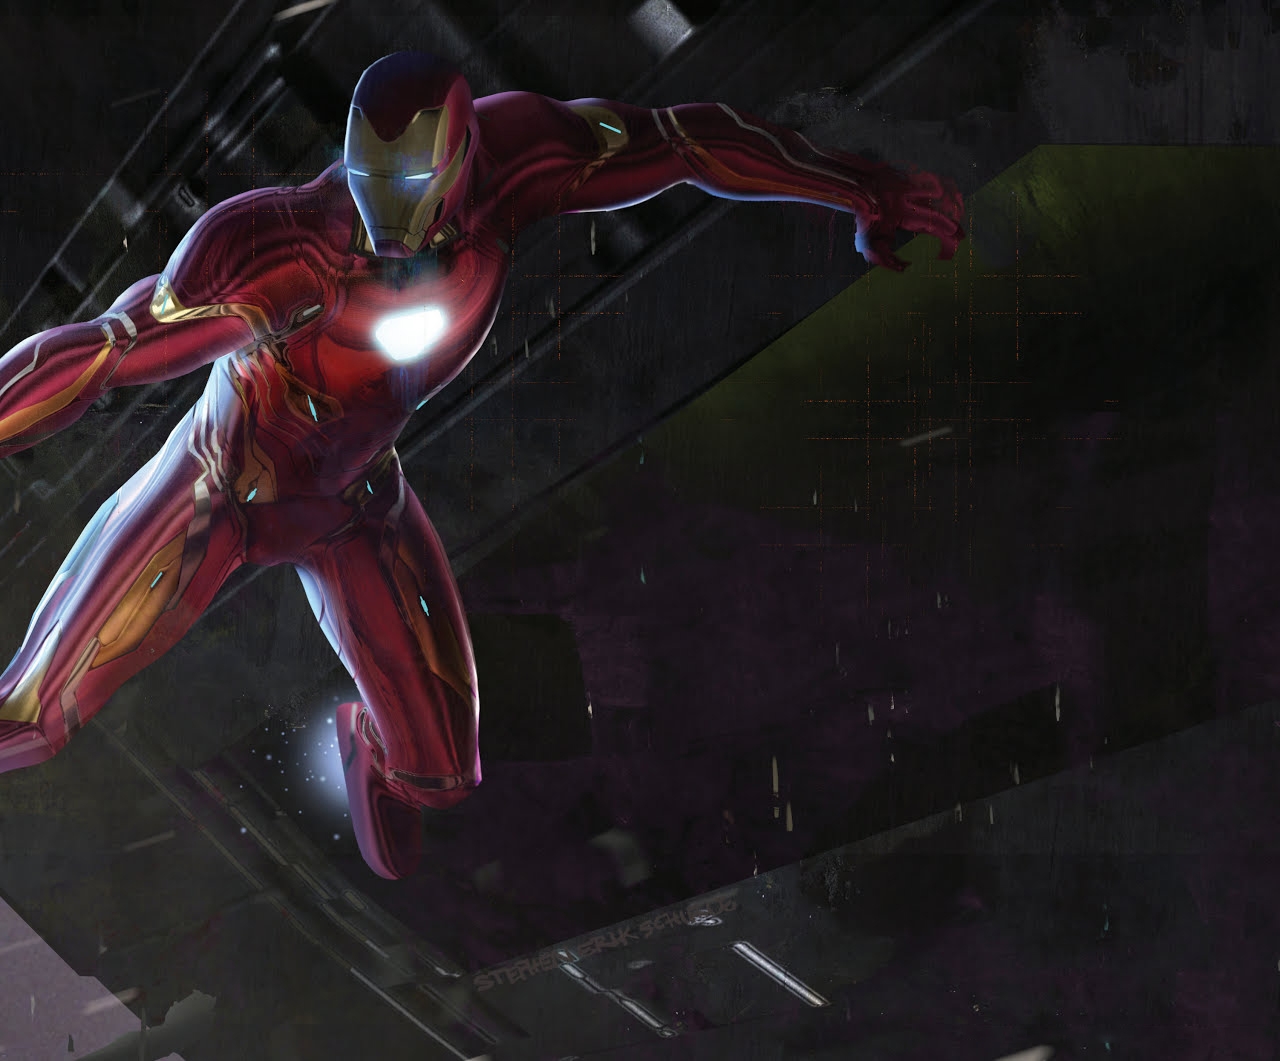 The Art of Marvel's Avengers Infinity War 159